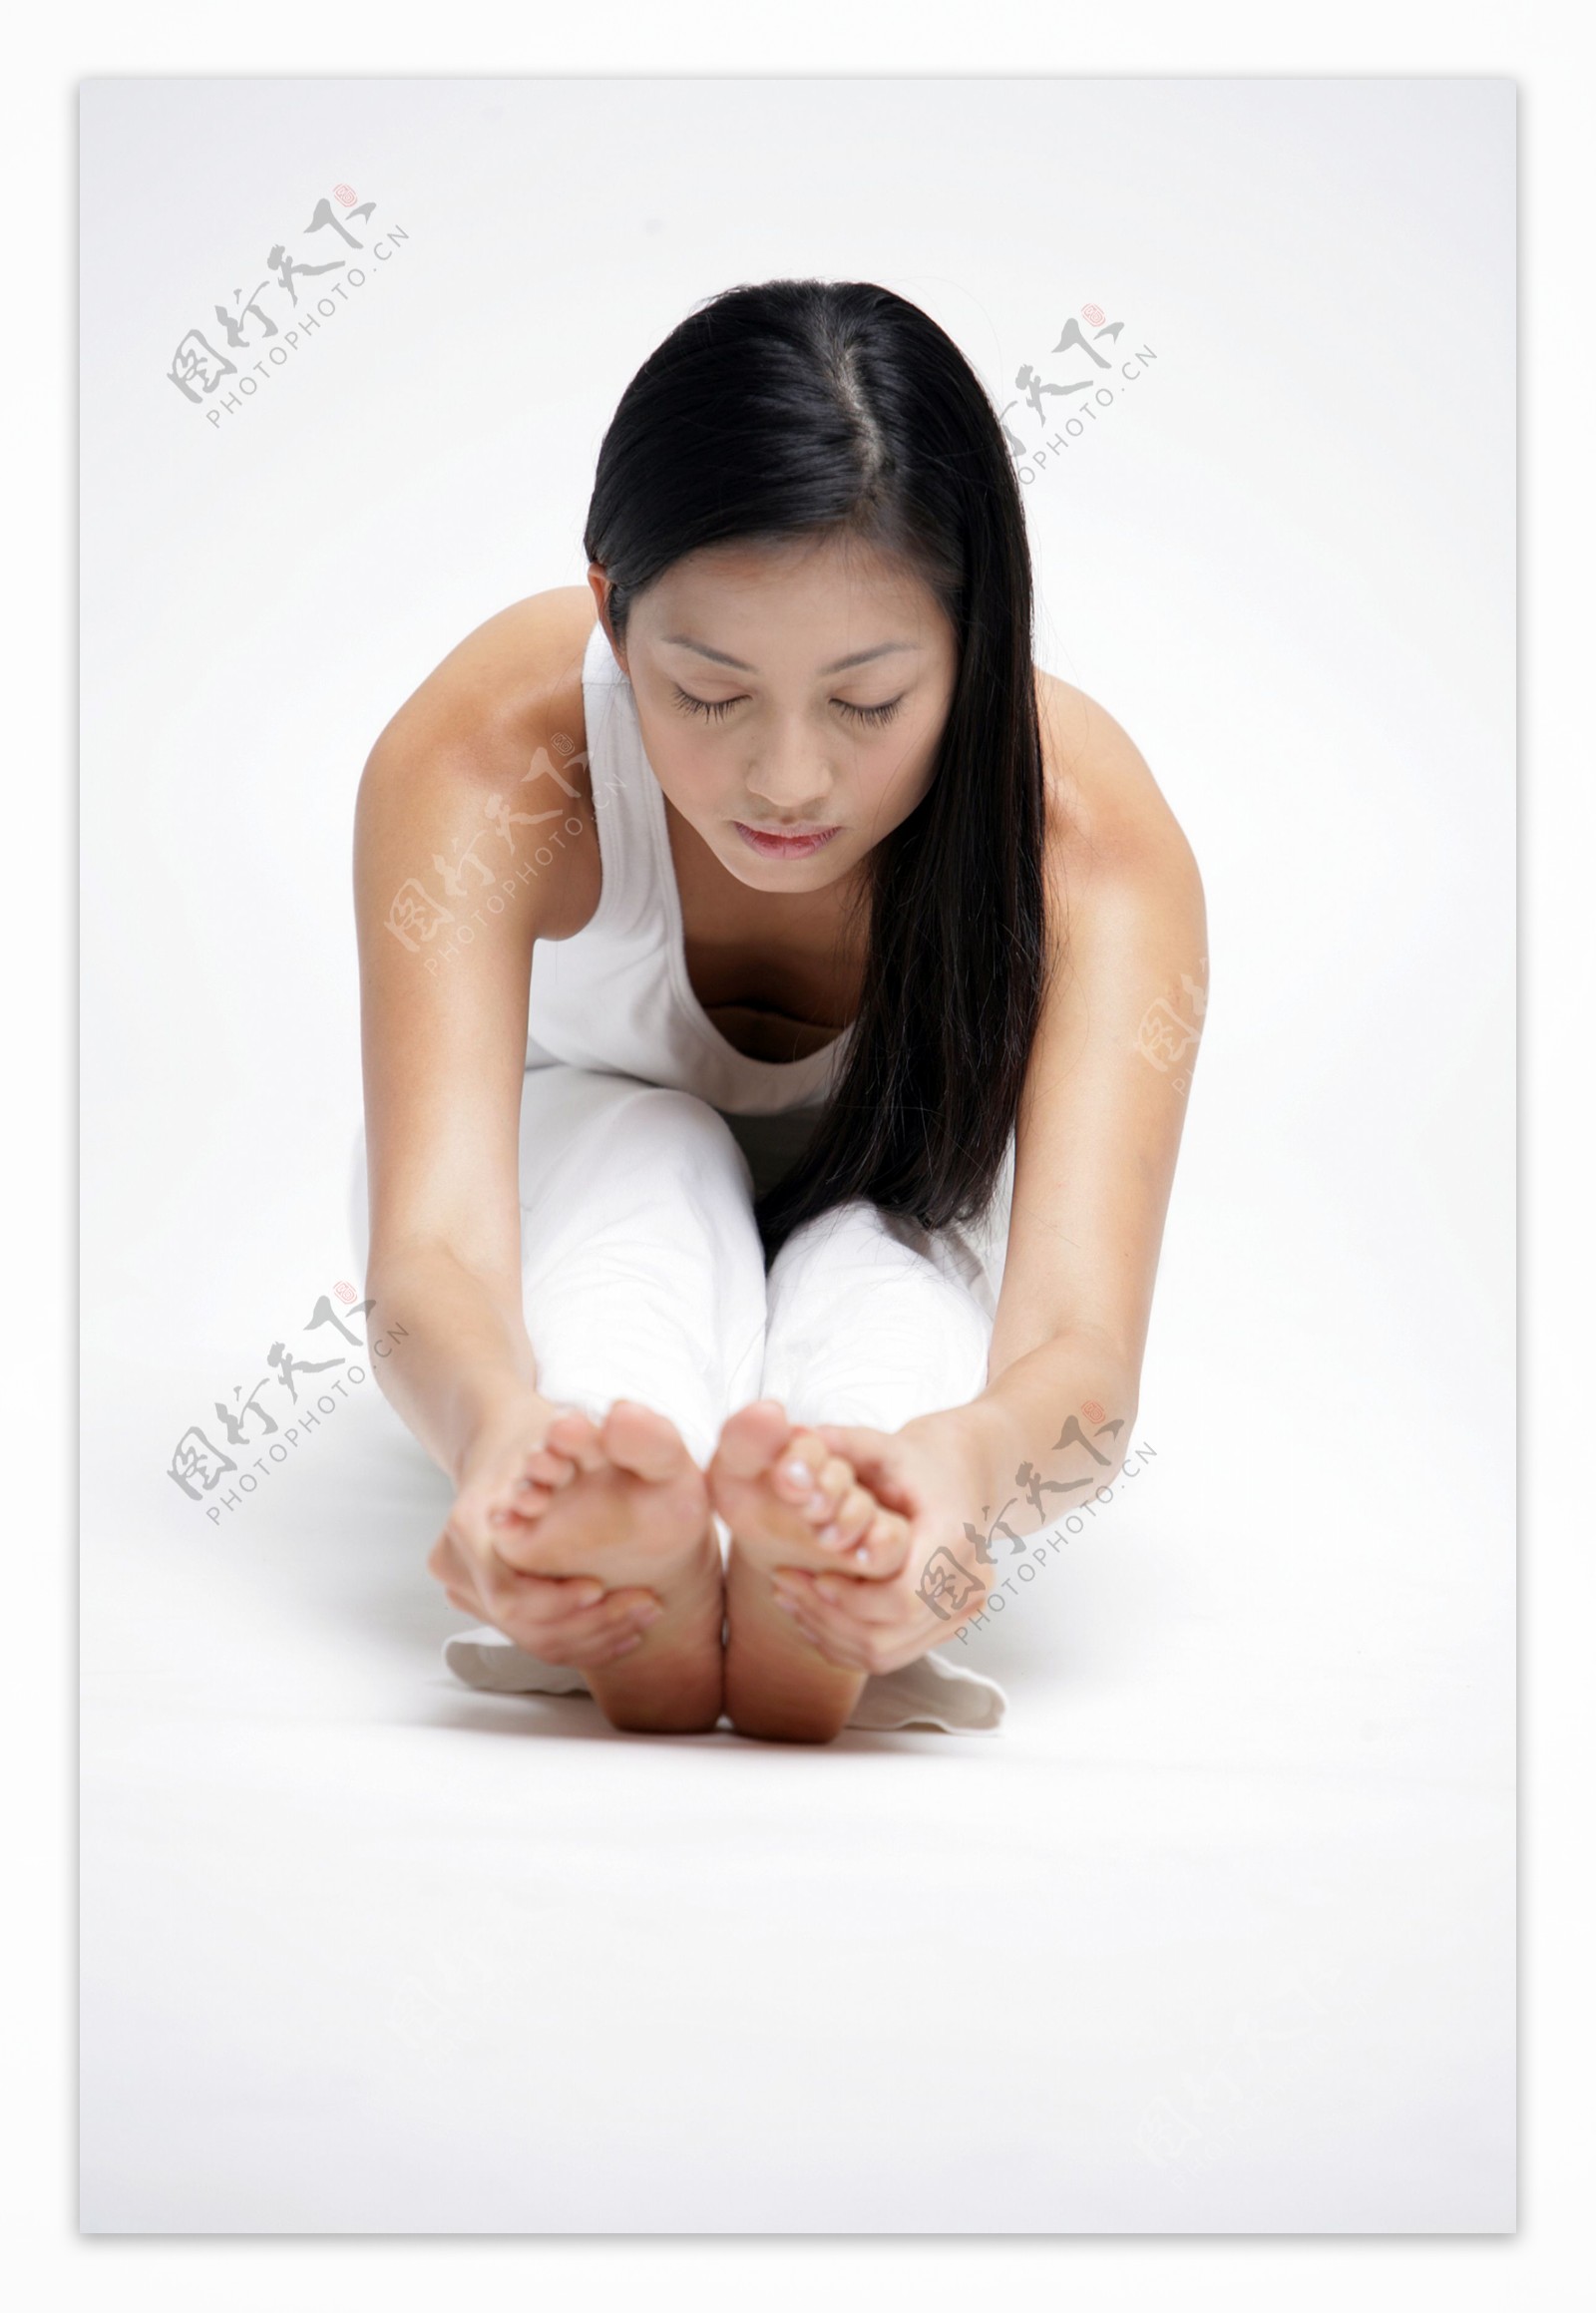 正在做瑜伽的女人图片